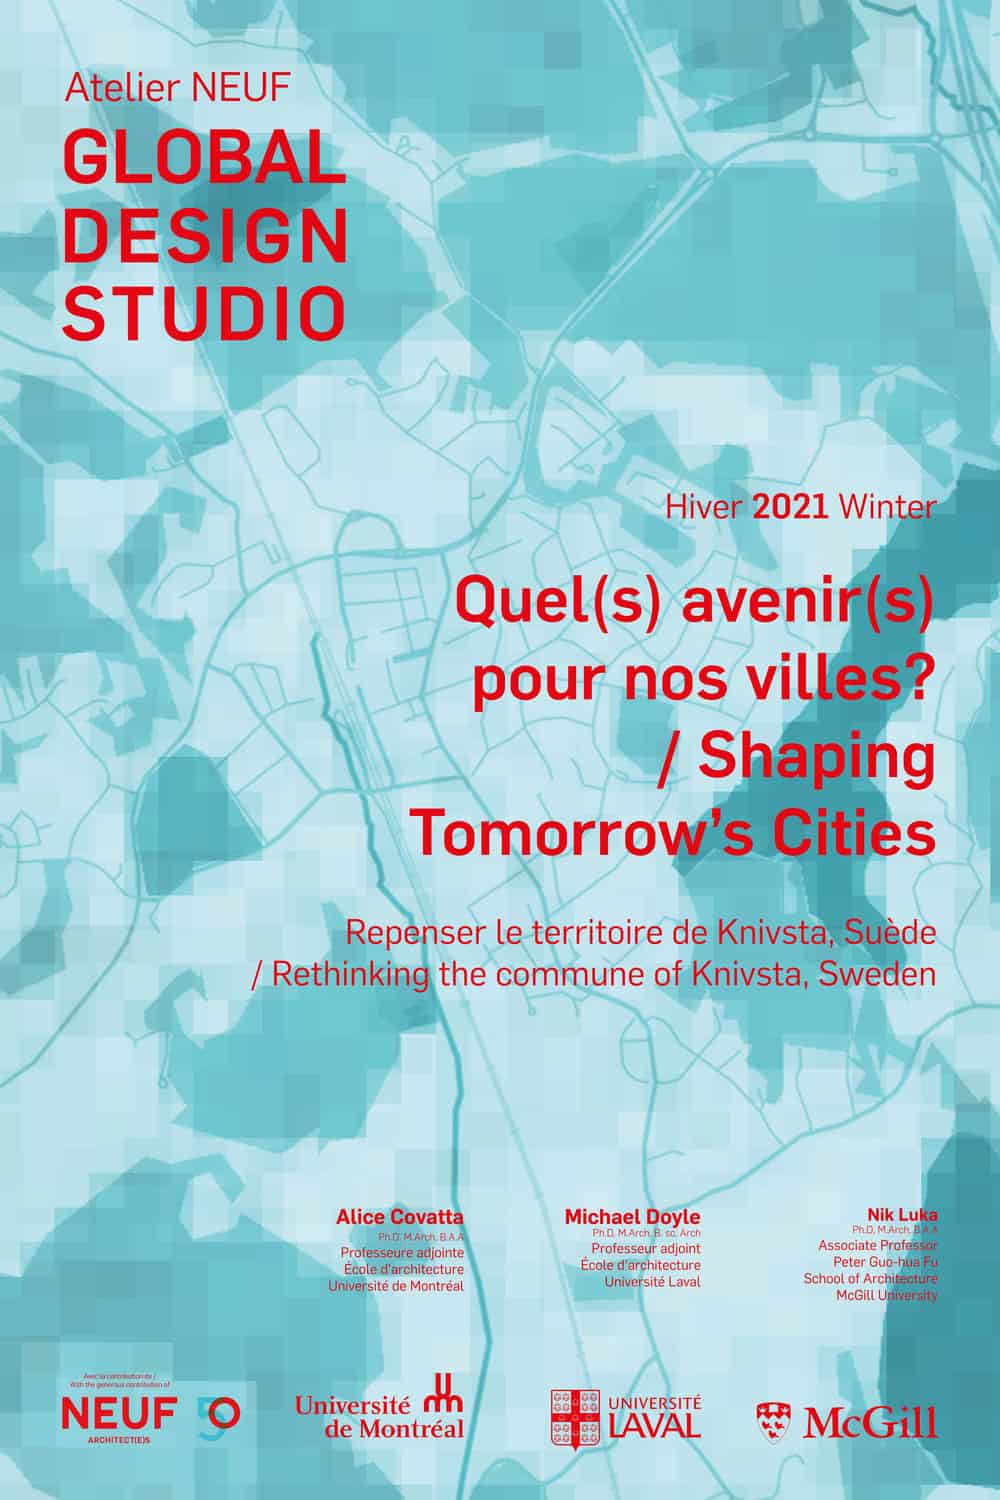 Atelier NEUF Global Design Studio Poster, 2021 winter semester 